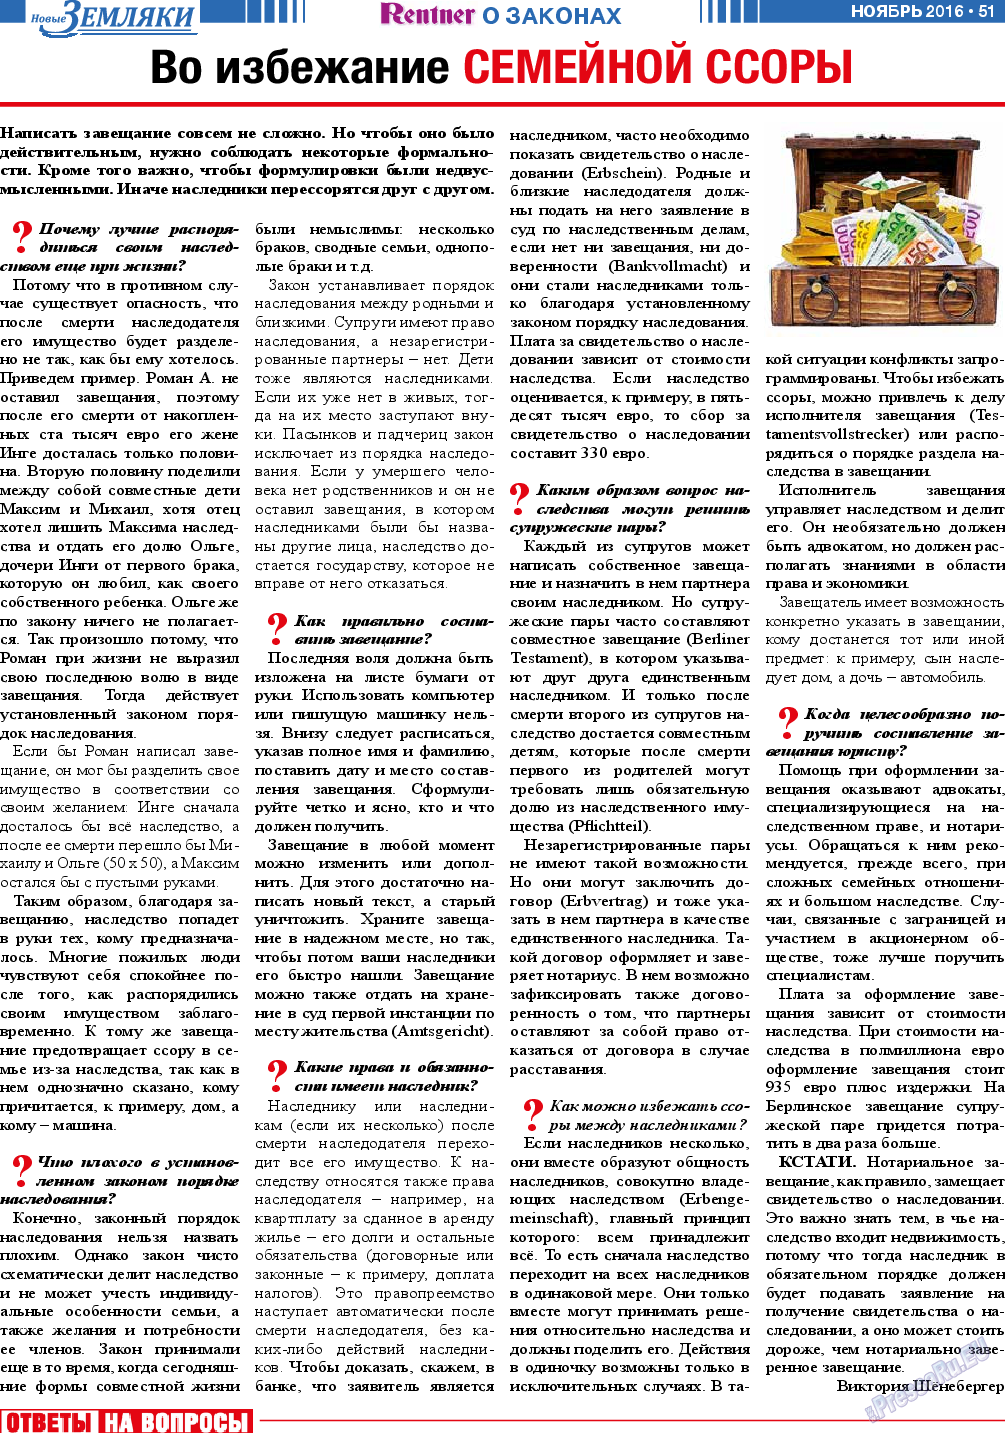 Новые Земляки, газета. 2016 №11 стр.51